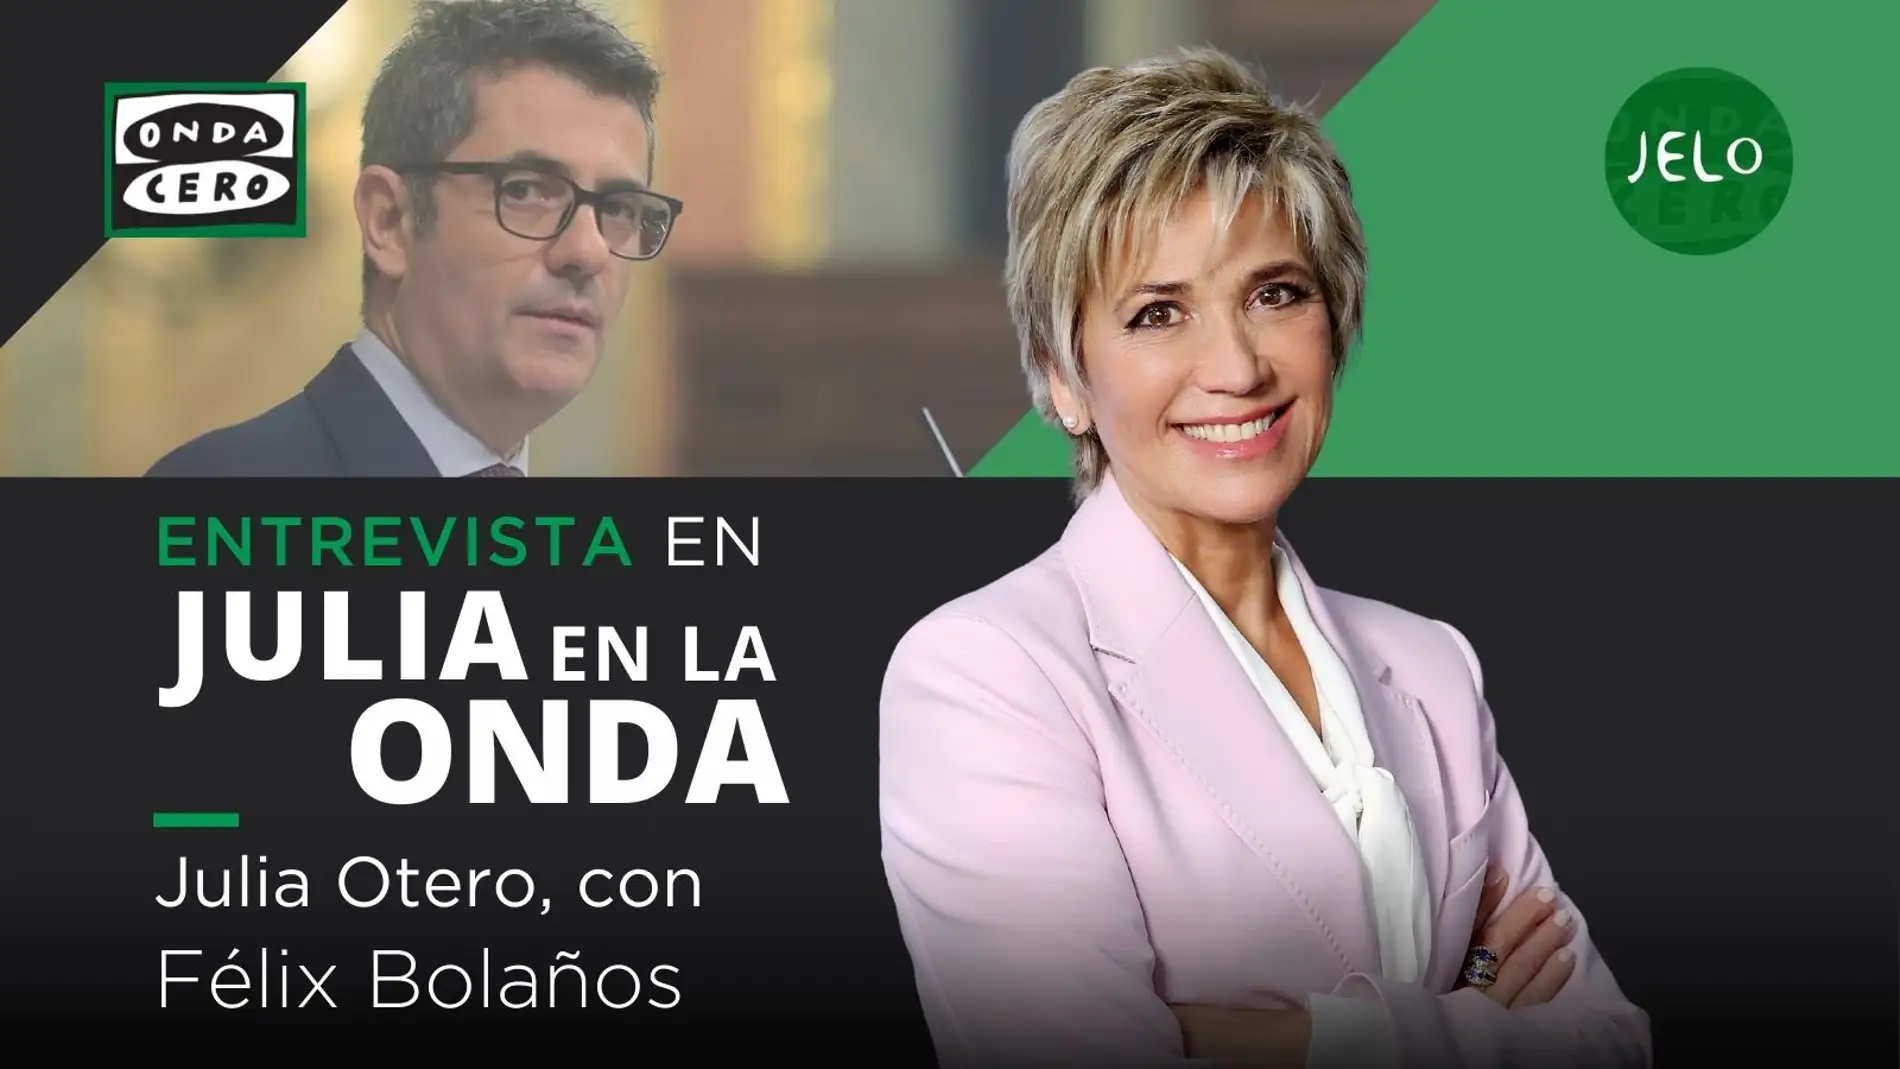 Julia Otero entrevista a Félix Bolaños este miércoles en 'Julia en la onda' | ondacero.es